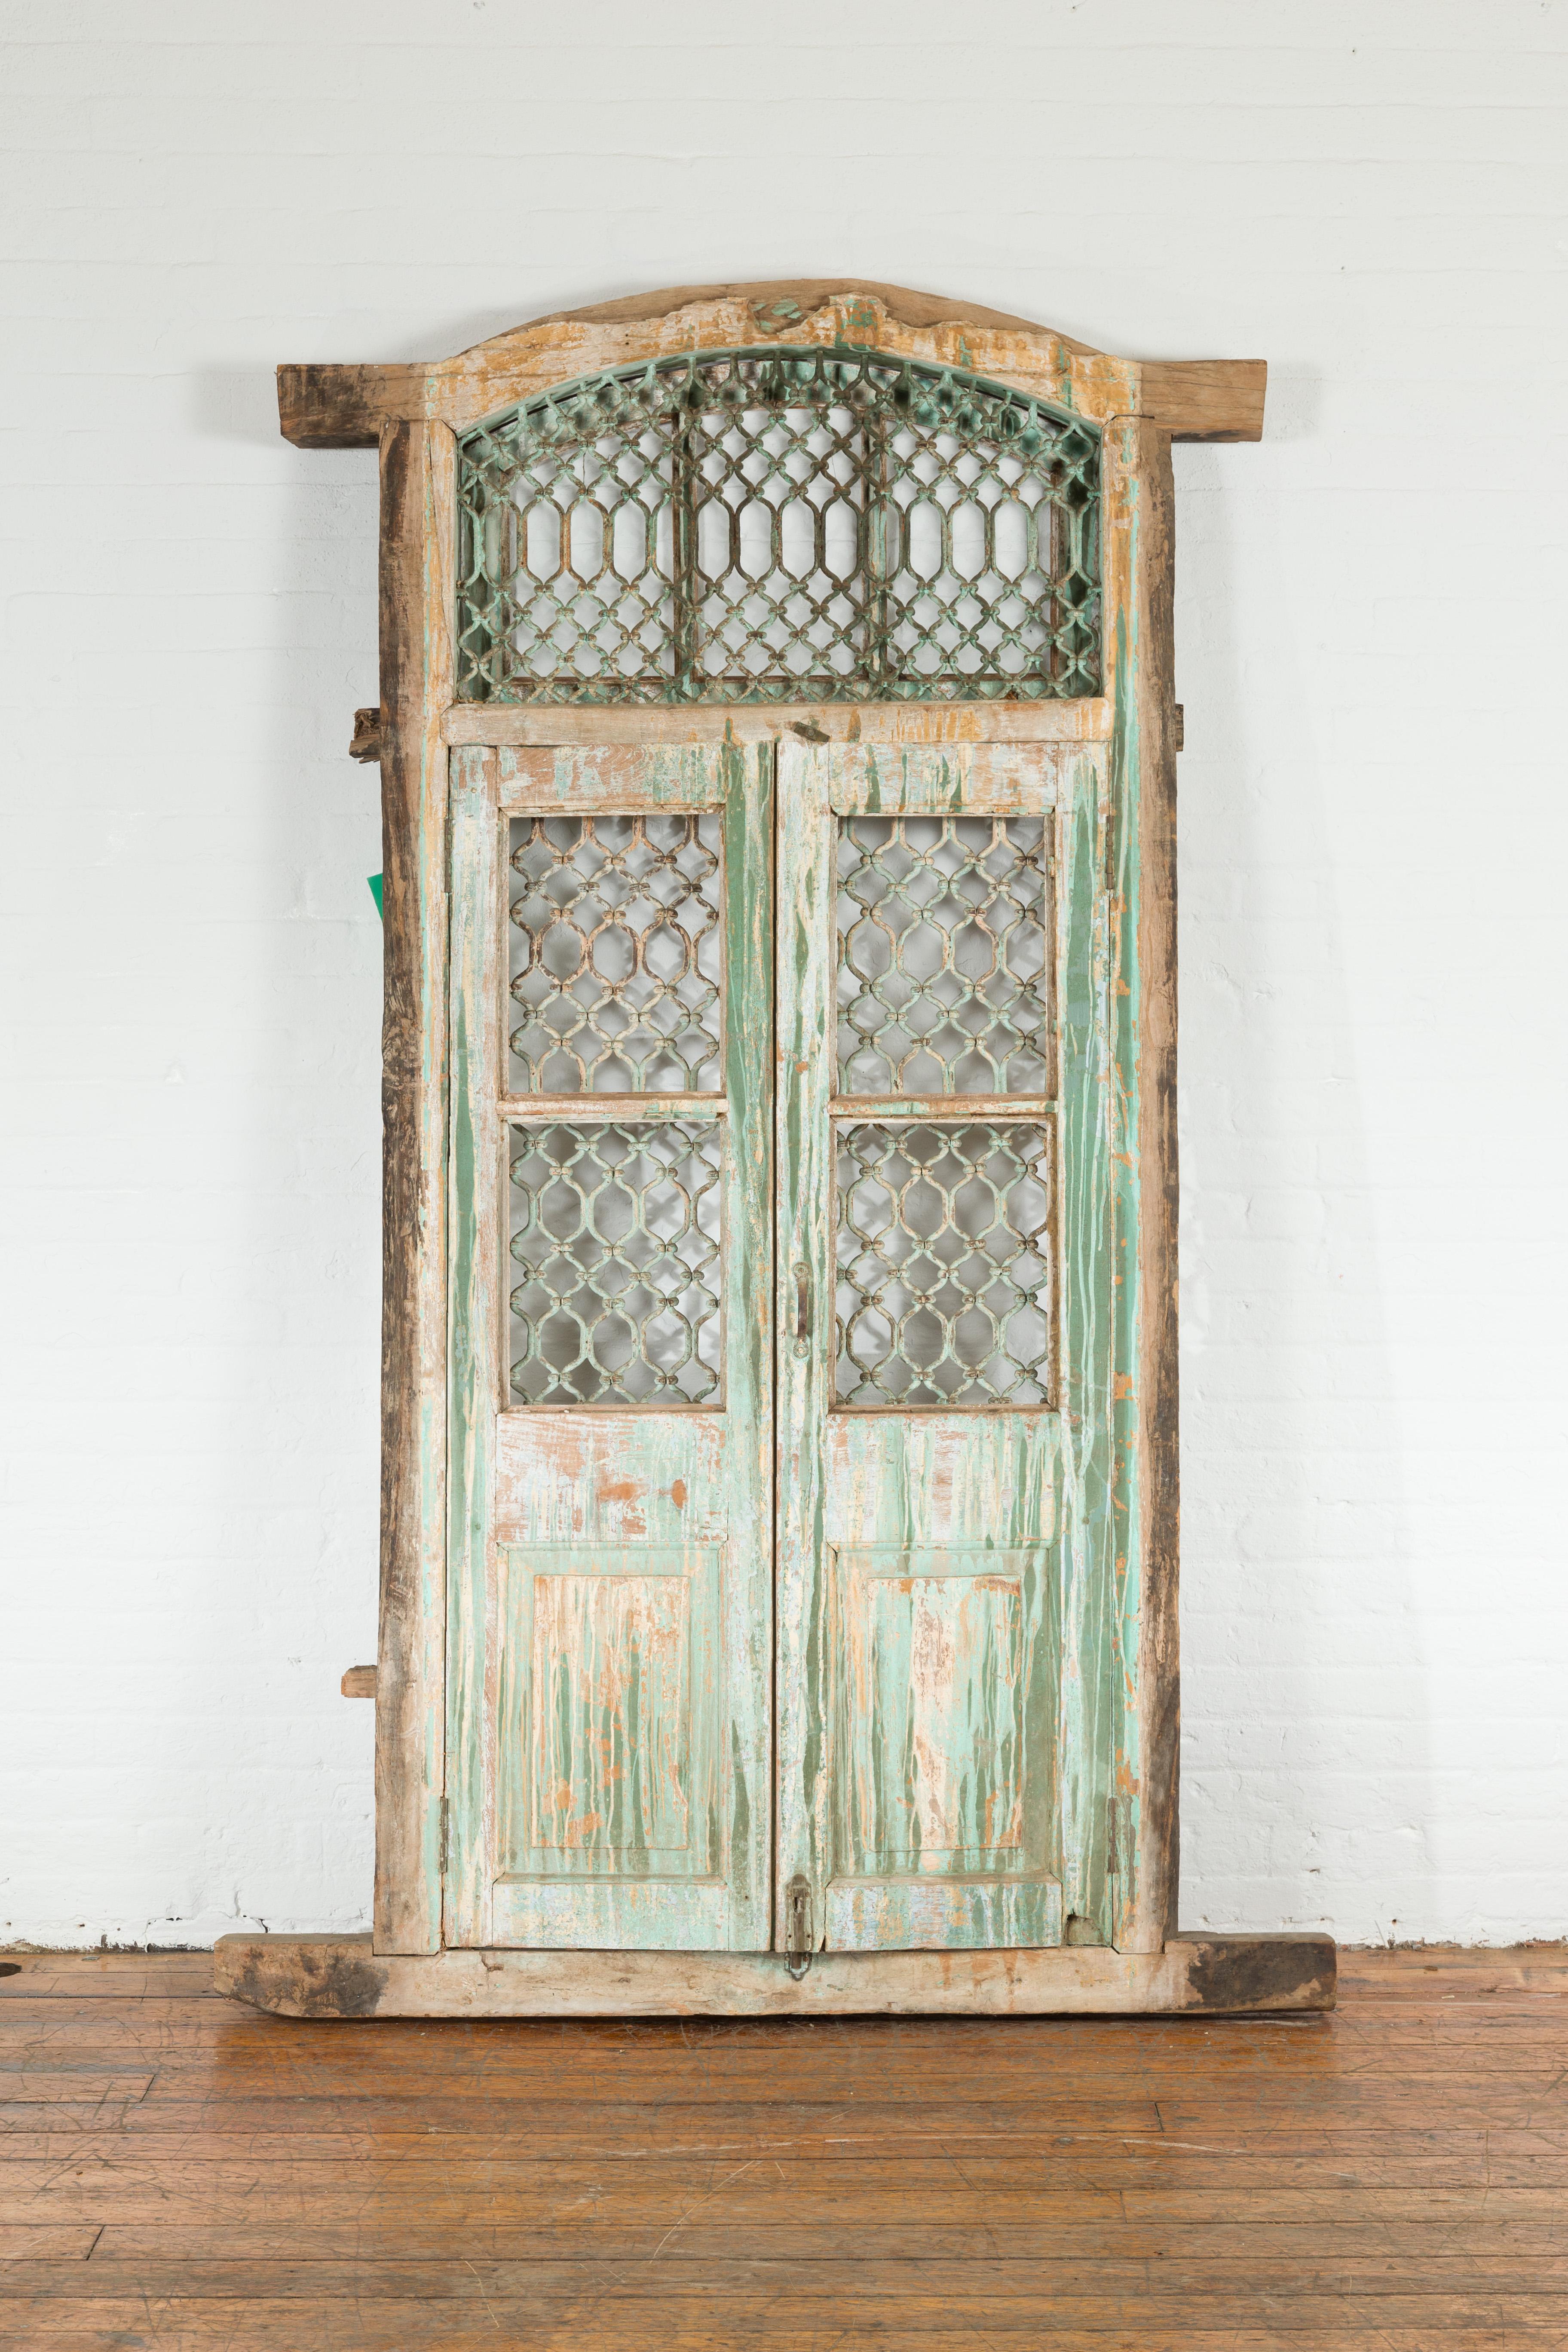 Une fenêtre indienne ancienne en grille de fer du 19ème siècle, avec une peinture verte et une patine d'ancienneté. Créée en Inde au 19e siècle, cette fenêtre haute antique présente une structure en bois joliment vieillie entourant une grille en